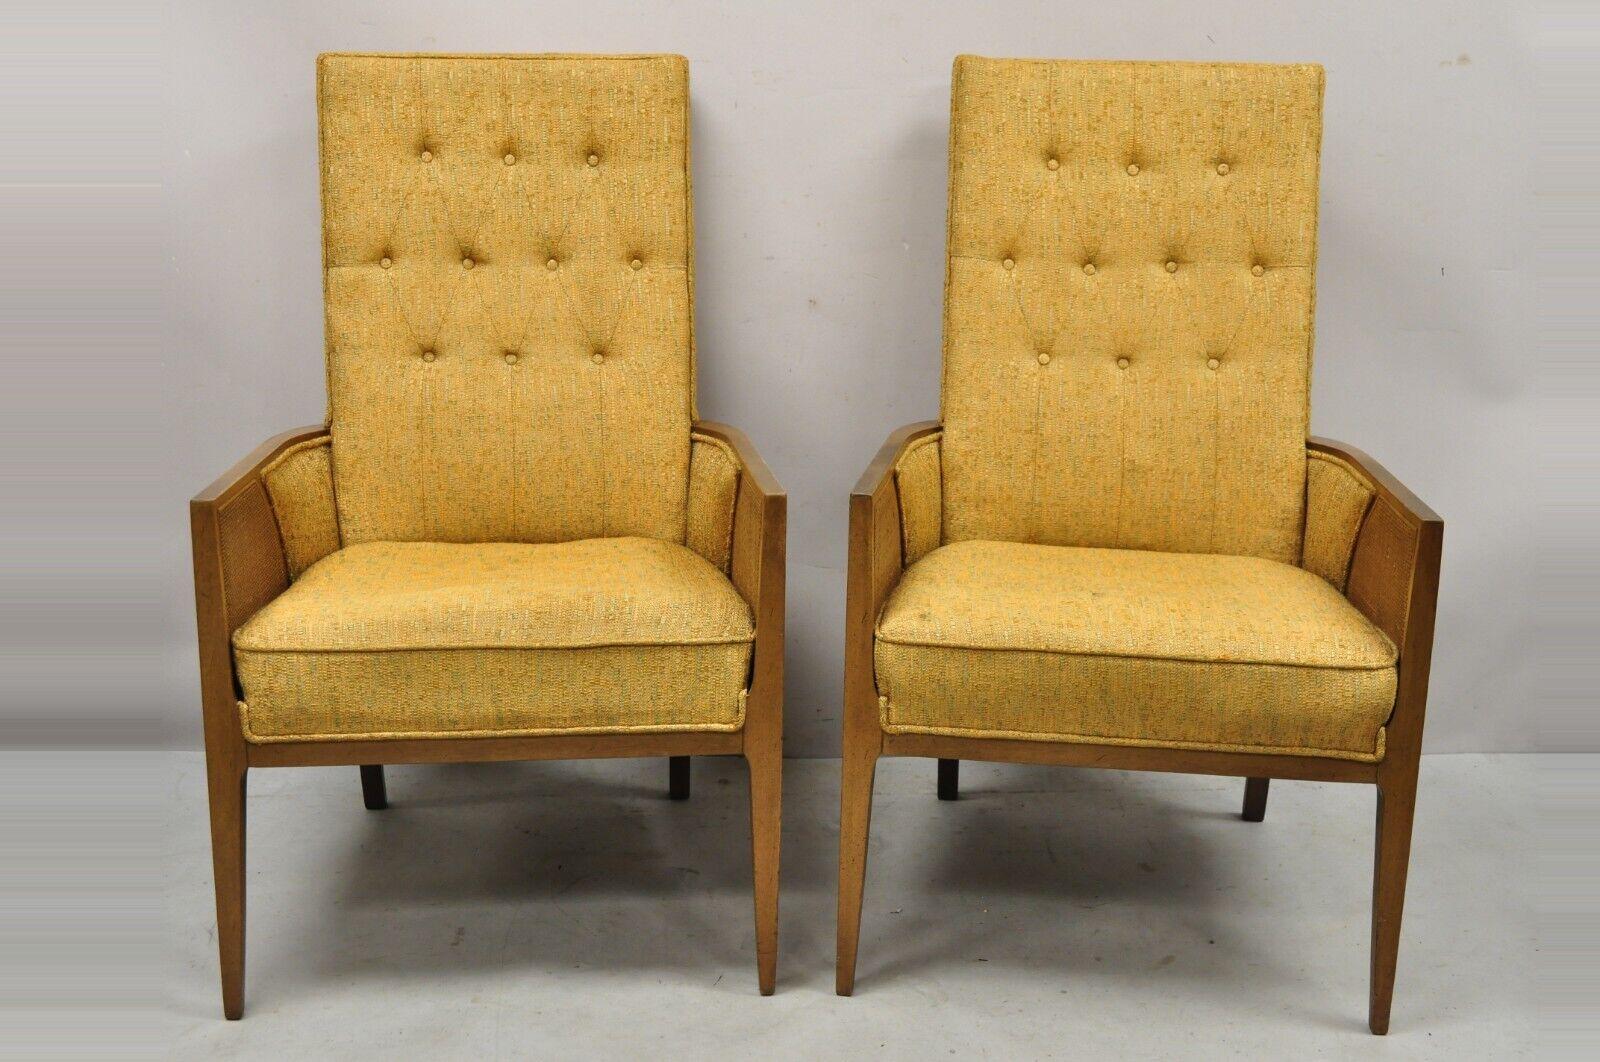 Mid Century Hollywood Regency Holz geschnitzt Cane Panel Lounge Chairs - ein Paar. Seitenteile aus Schilfrohr, Massivholzrahmen, konische Beine, sehr schönes Vintage-Paar, schlanke skulpturale Form, neu zu polstern. Durchgehend harter Schaum. Circa